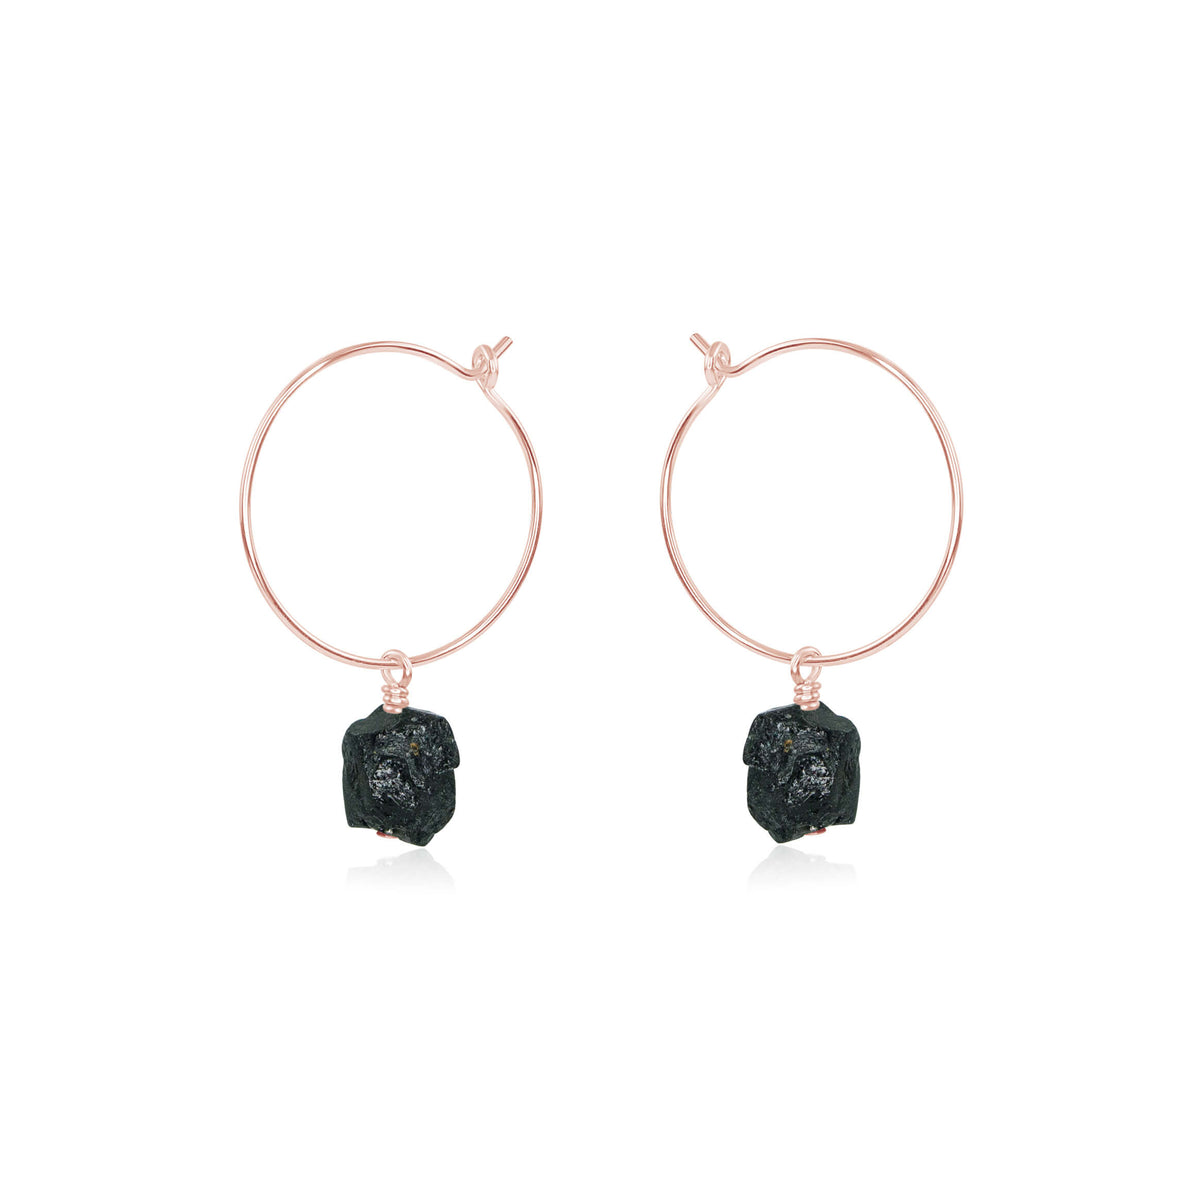 Raw Nugget Hoop Earrings - Black Tourmaline - 14K Rose Gold Fill - Luna Tide Handmade Jewellery